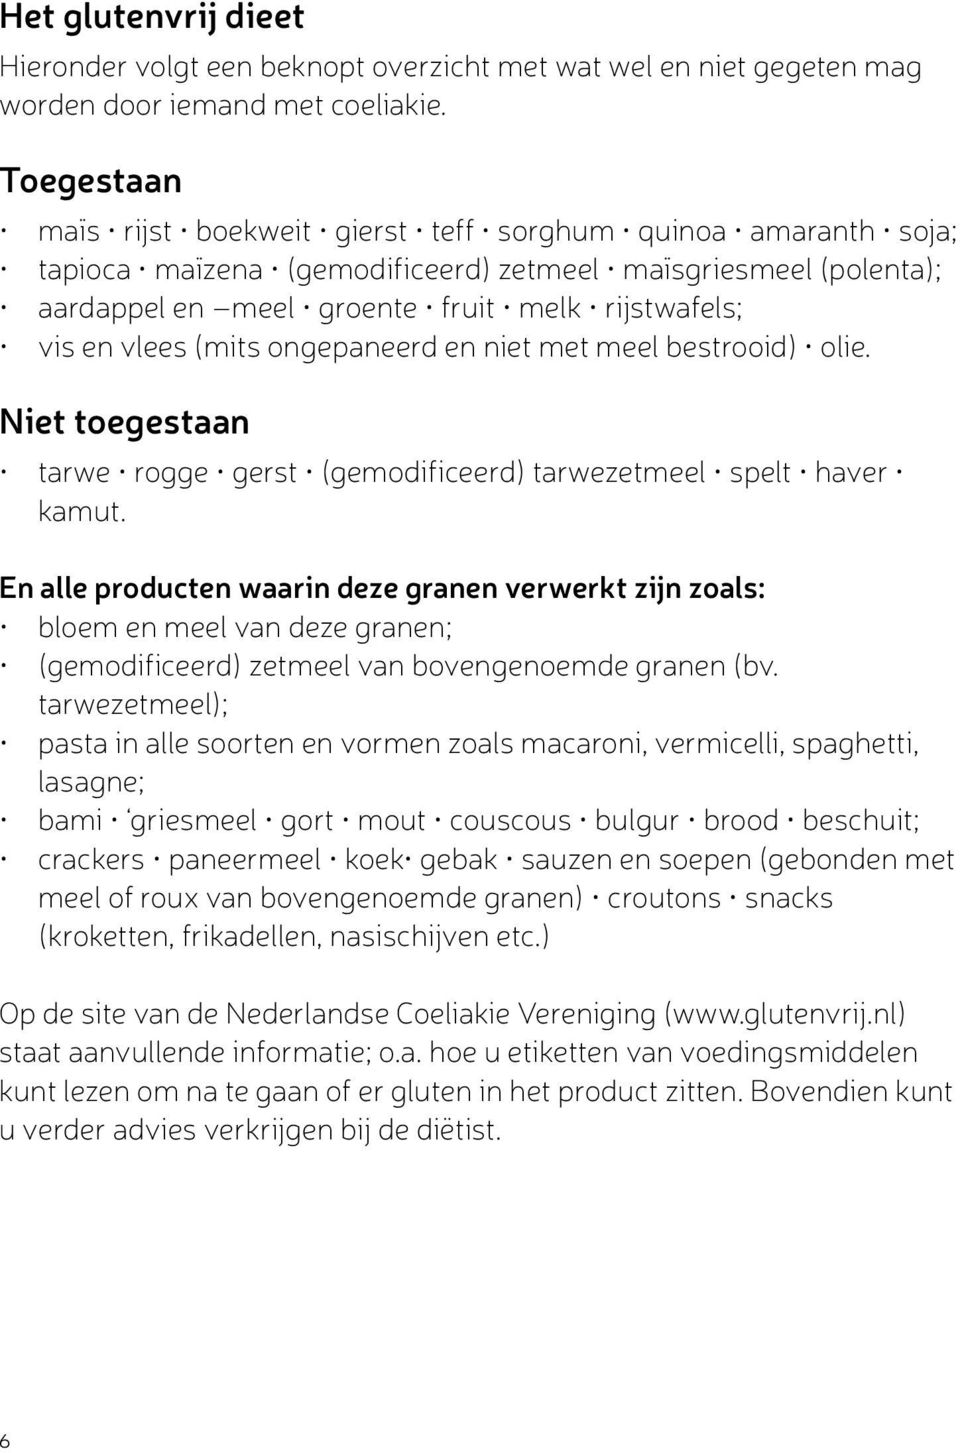 vlees (mits ongepaneerd en niet met meel bestrooid) olie. Niet toegestaan tarwe rogge gerst (gemodificeerd) tarwezetmeel spelt haver kamut.